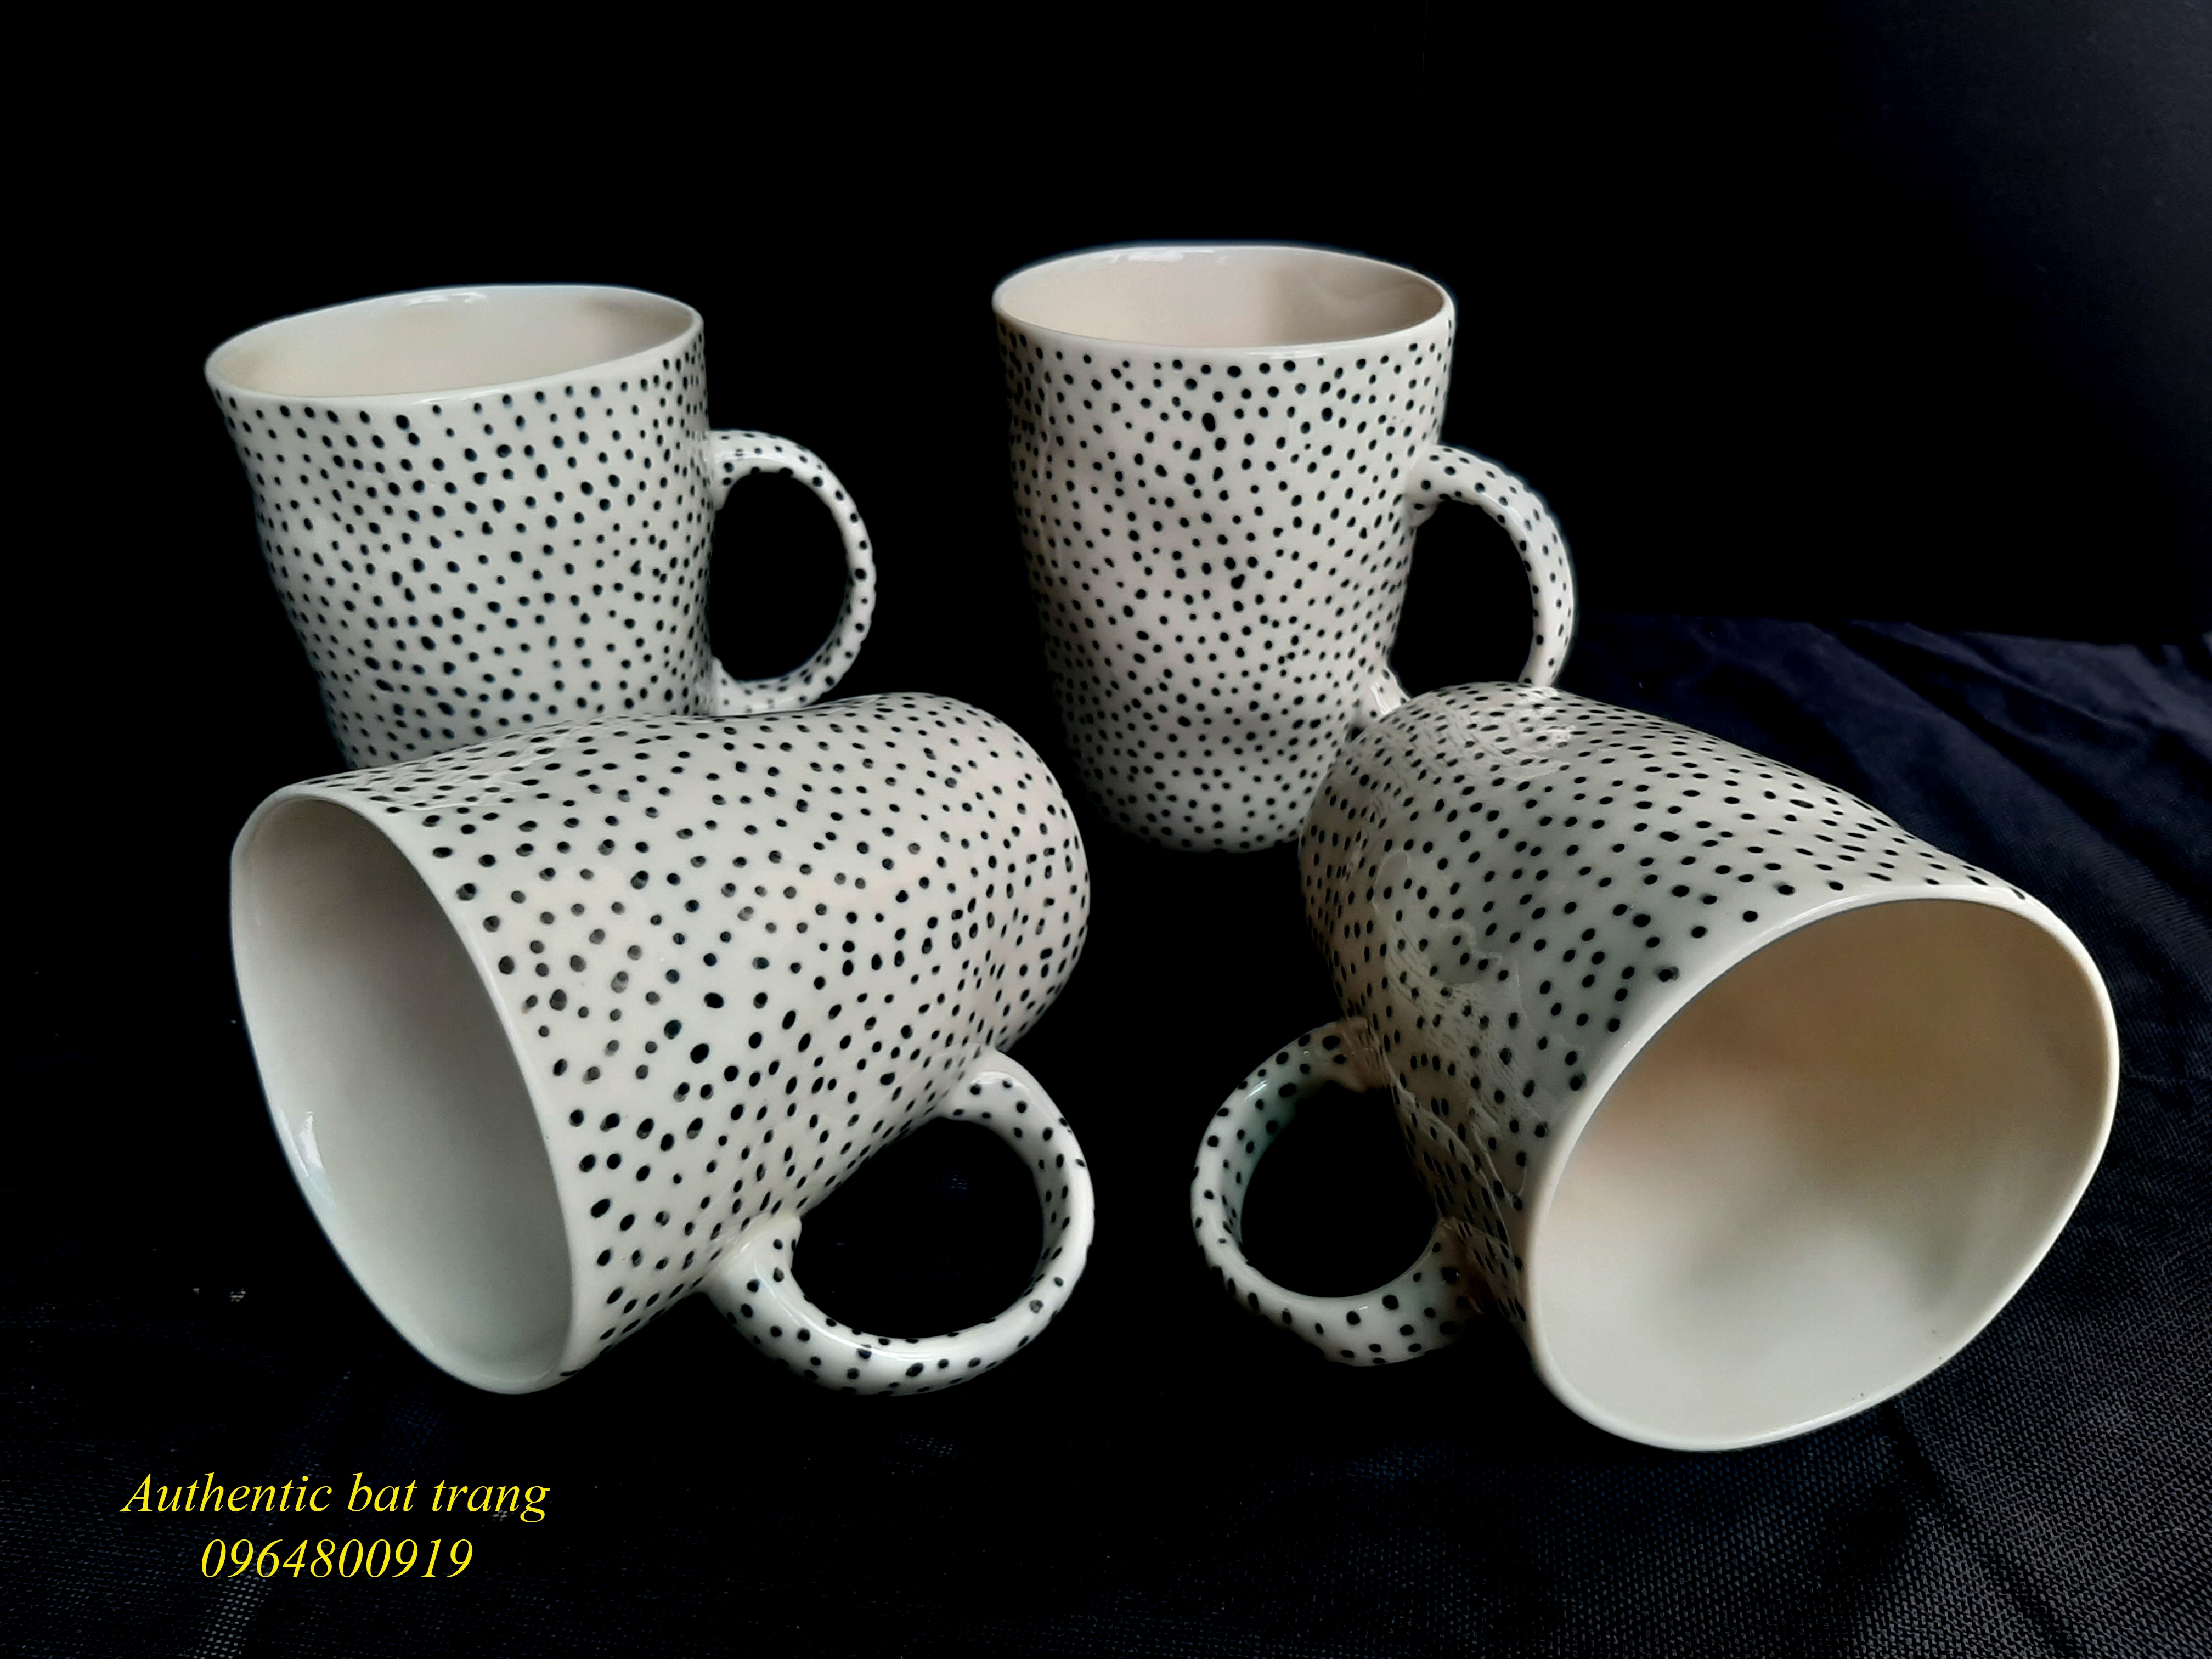 Black dots cups/ Cốc méo xuất âu họa tiết chấm bị vẽ thủ công sản xuất tại xương gốm sứ Authentic bat trang